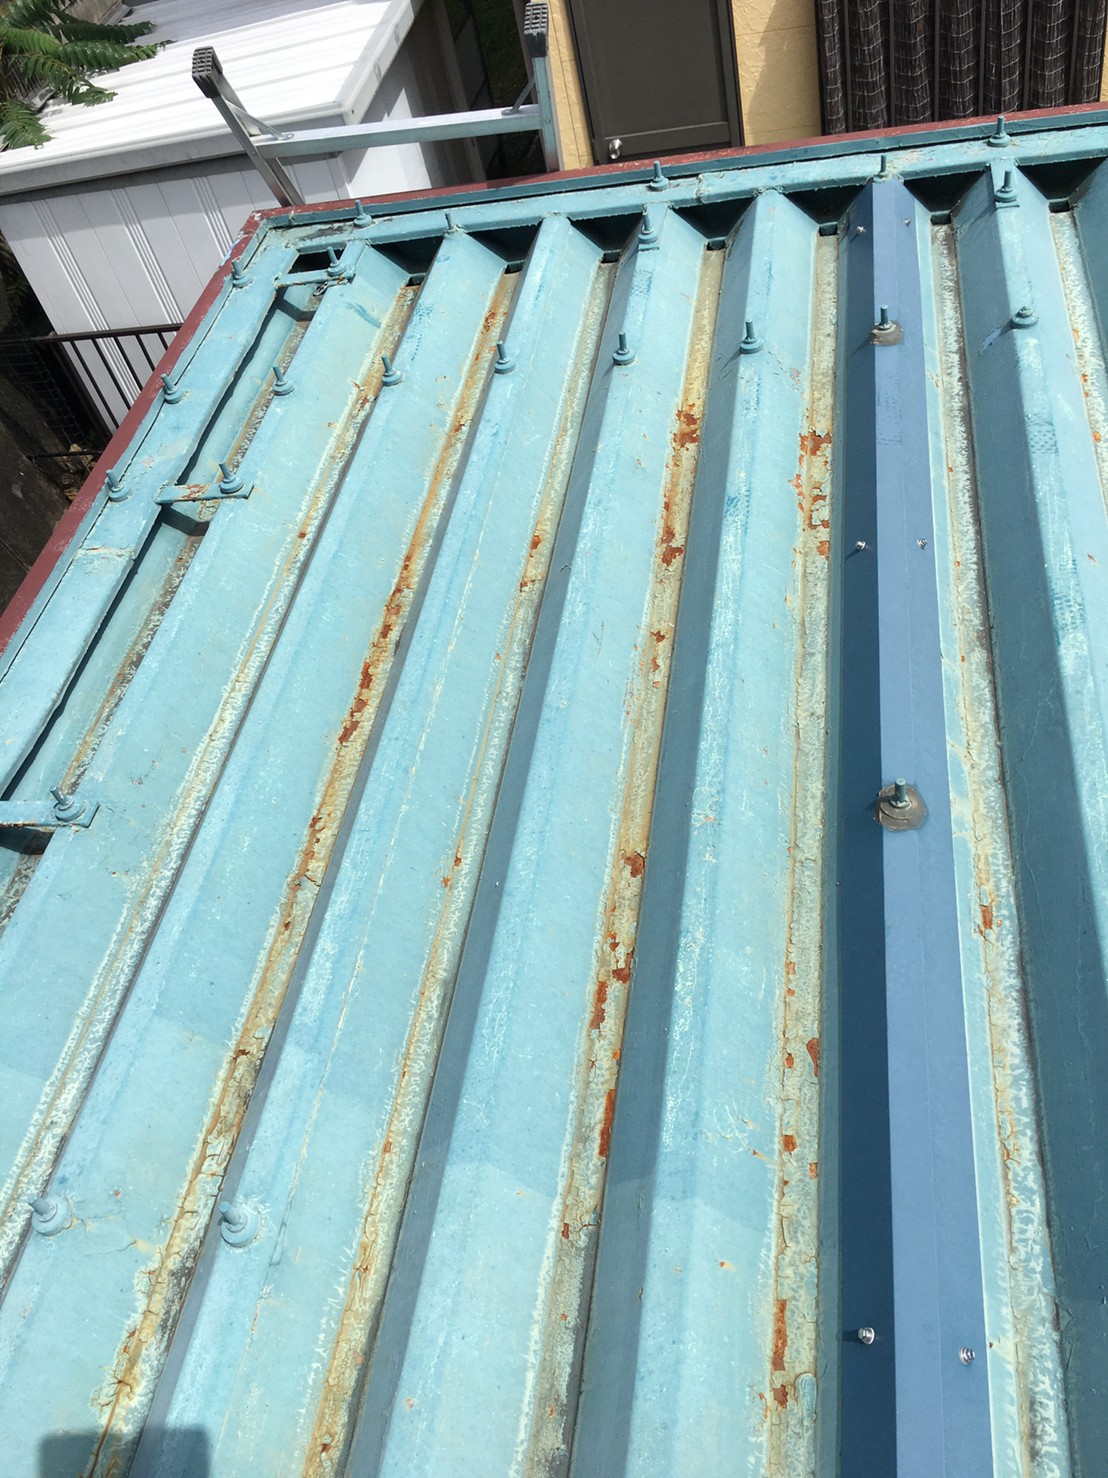 綺麗に仕上がりました。
元々、屋根のセッパンの色目は、青色でしたが、より青く綺麗になりました。
セッパンも錆びて、所々、焦げ茶色でした。
ケレンして、錆を落とし、錆止めを塗り、マックスシールド１５００SIシリコンJYで、塗りました。
剥離を起こしていた屋根が、綺麗になりました。
板金の破風板もサービスで塗装しました。
小庇も換気扇も、綺麗に塗りました。
ありがとうございます。